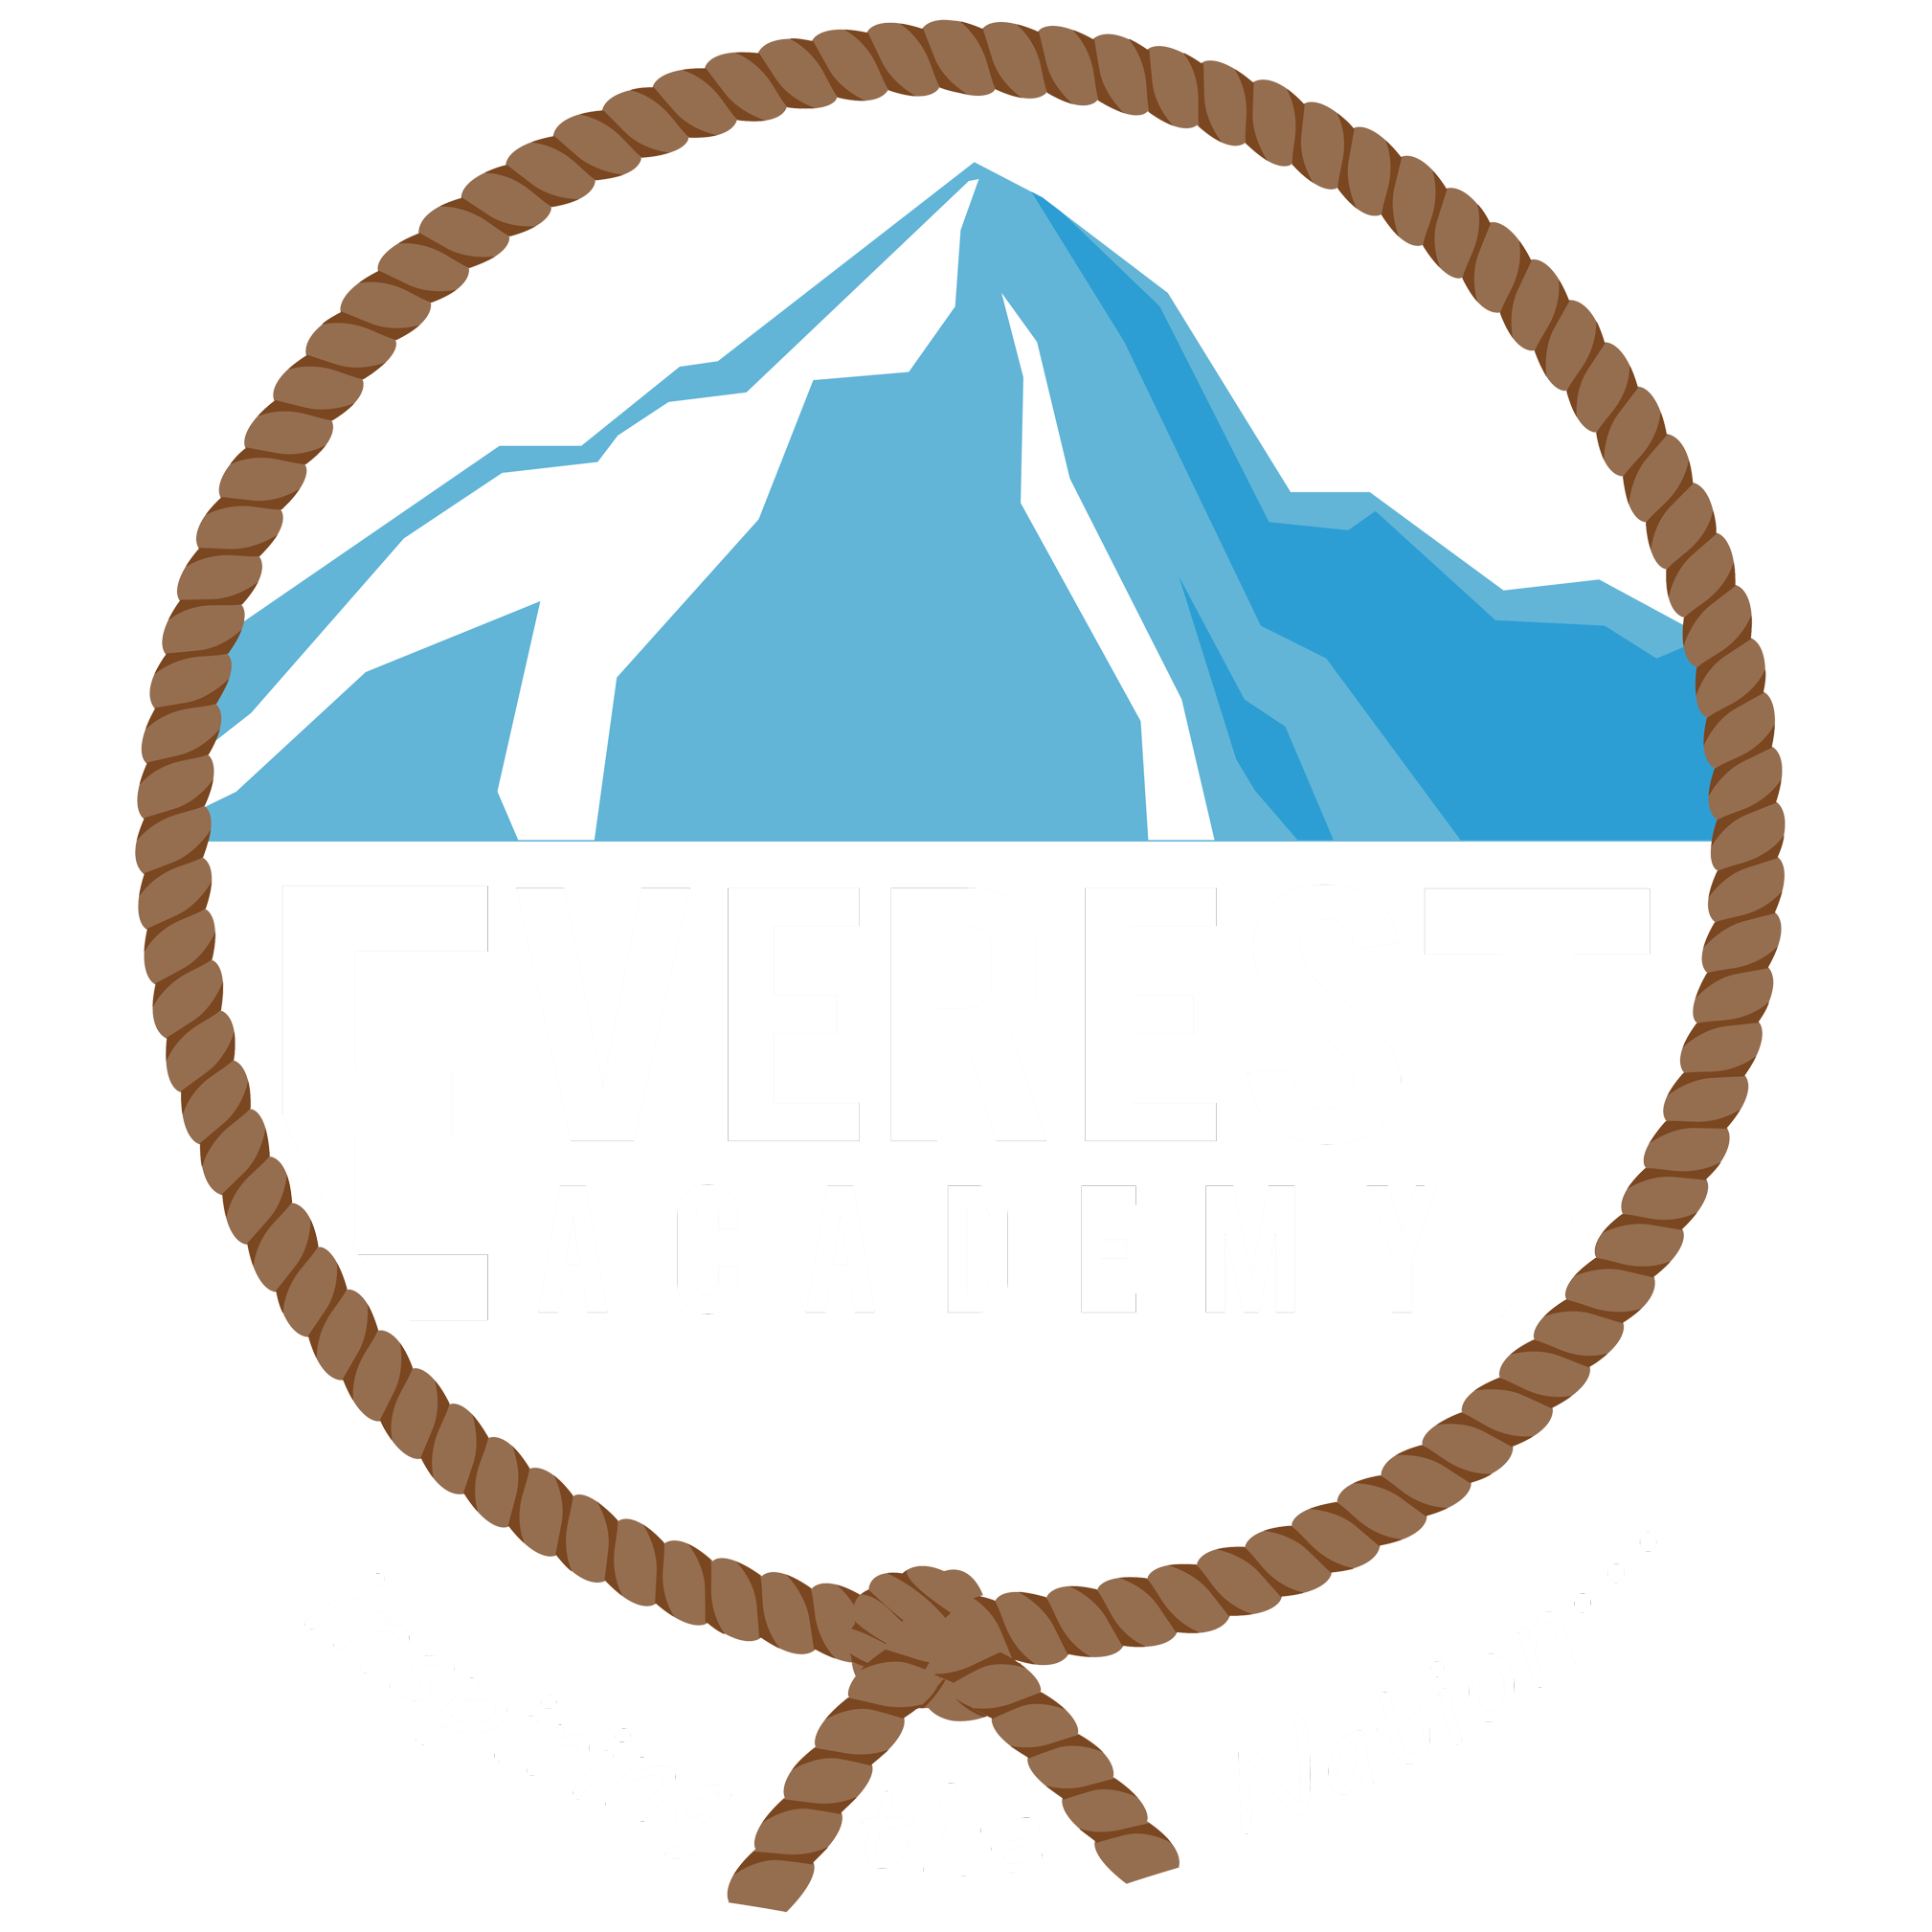 1XBET Az Mobi & Mobi - Everest Academy